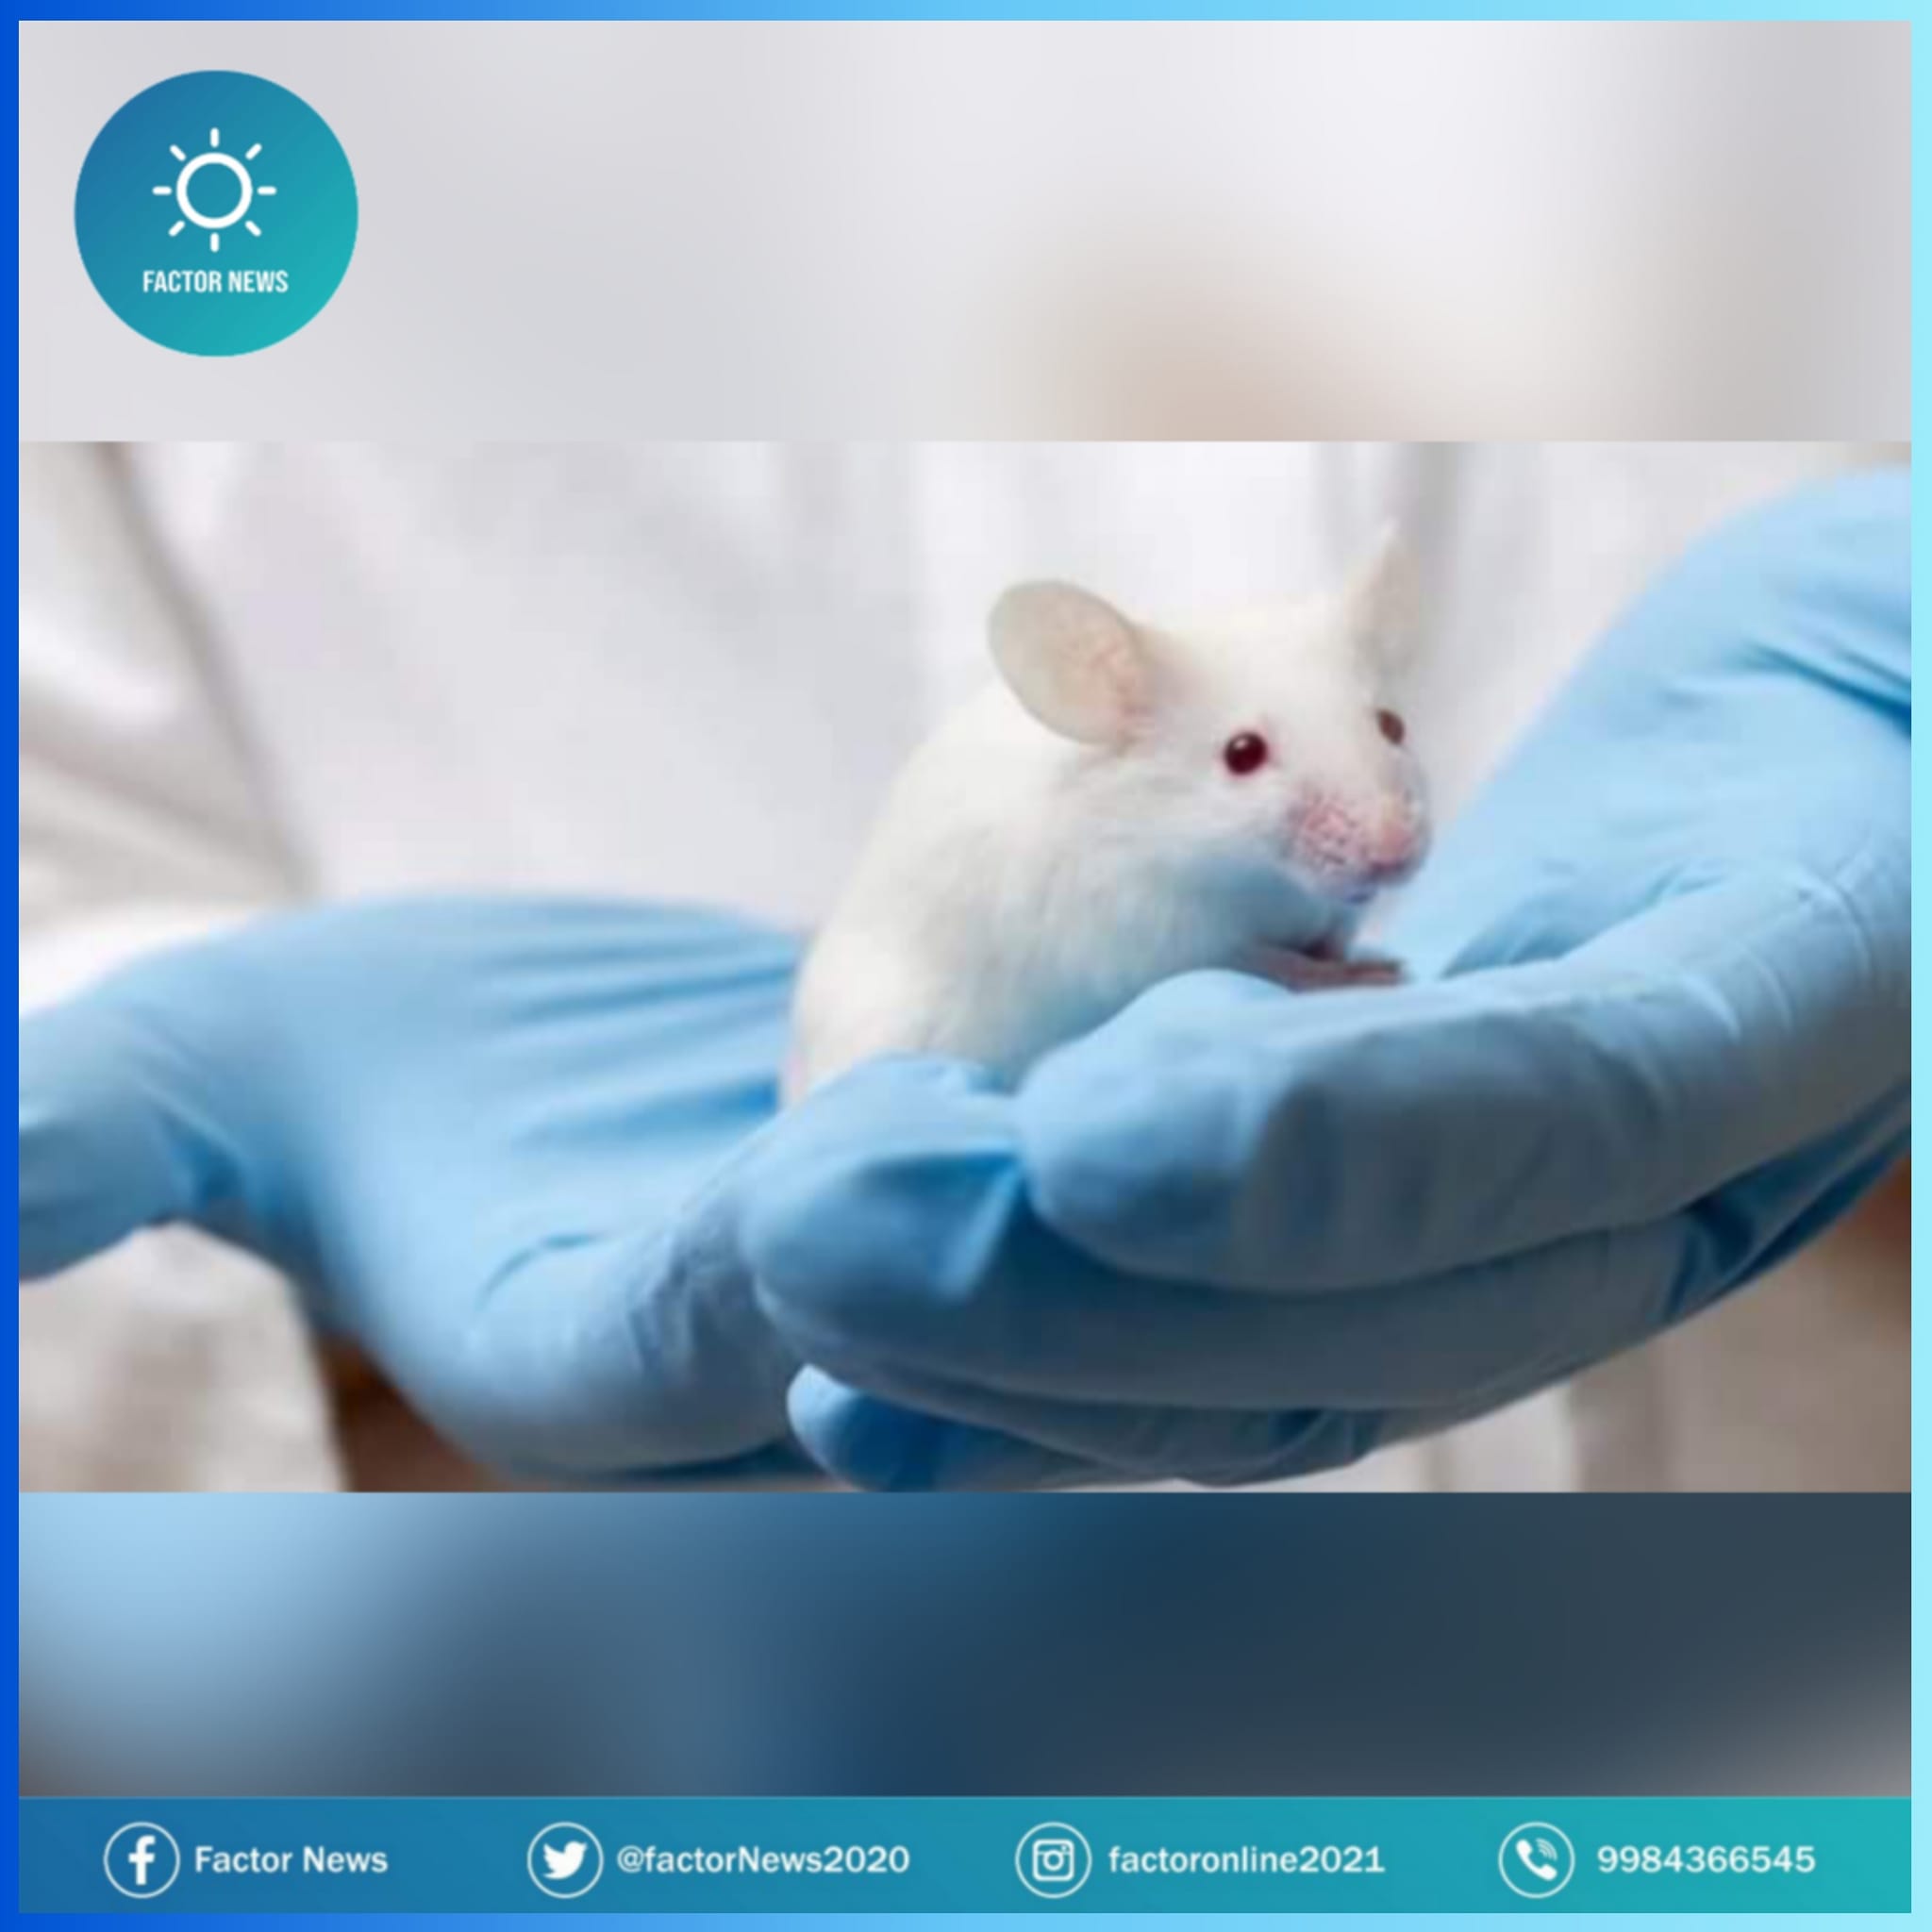 Prueban con éxito en ratones células madre para atacar el glioblastoma.